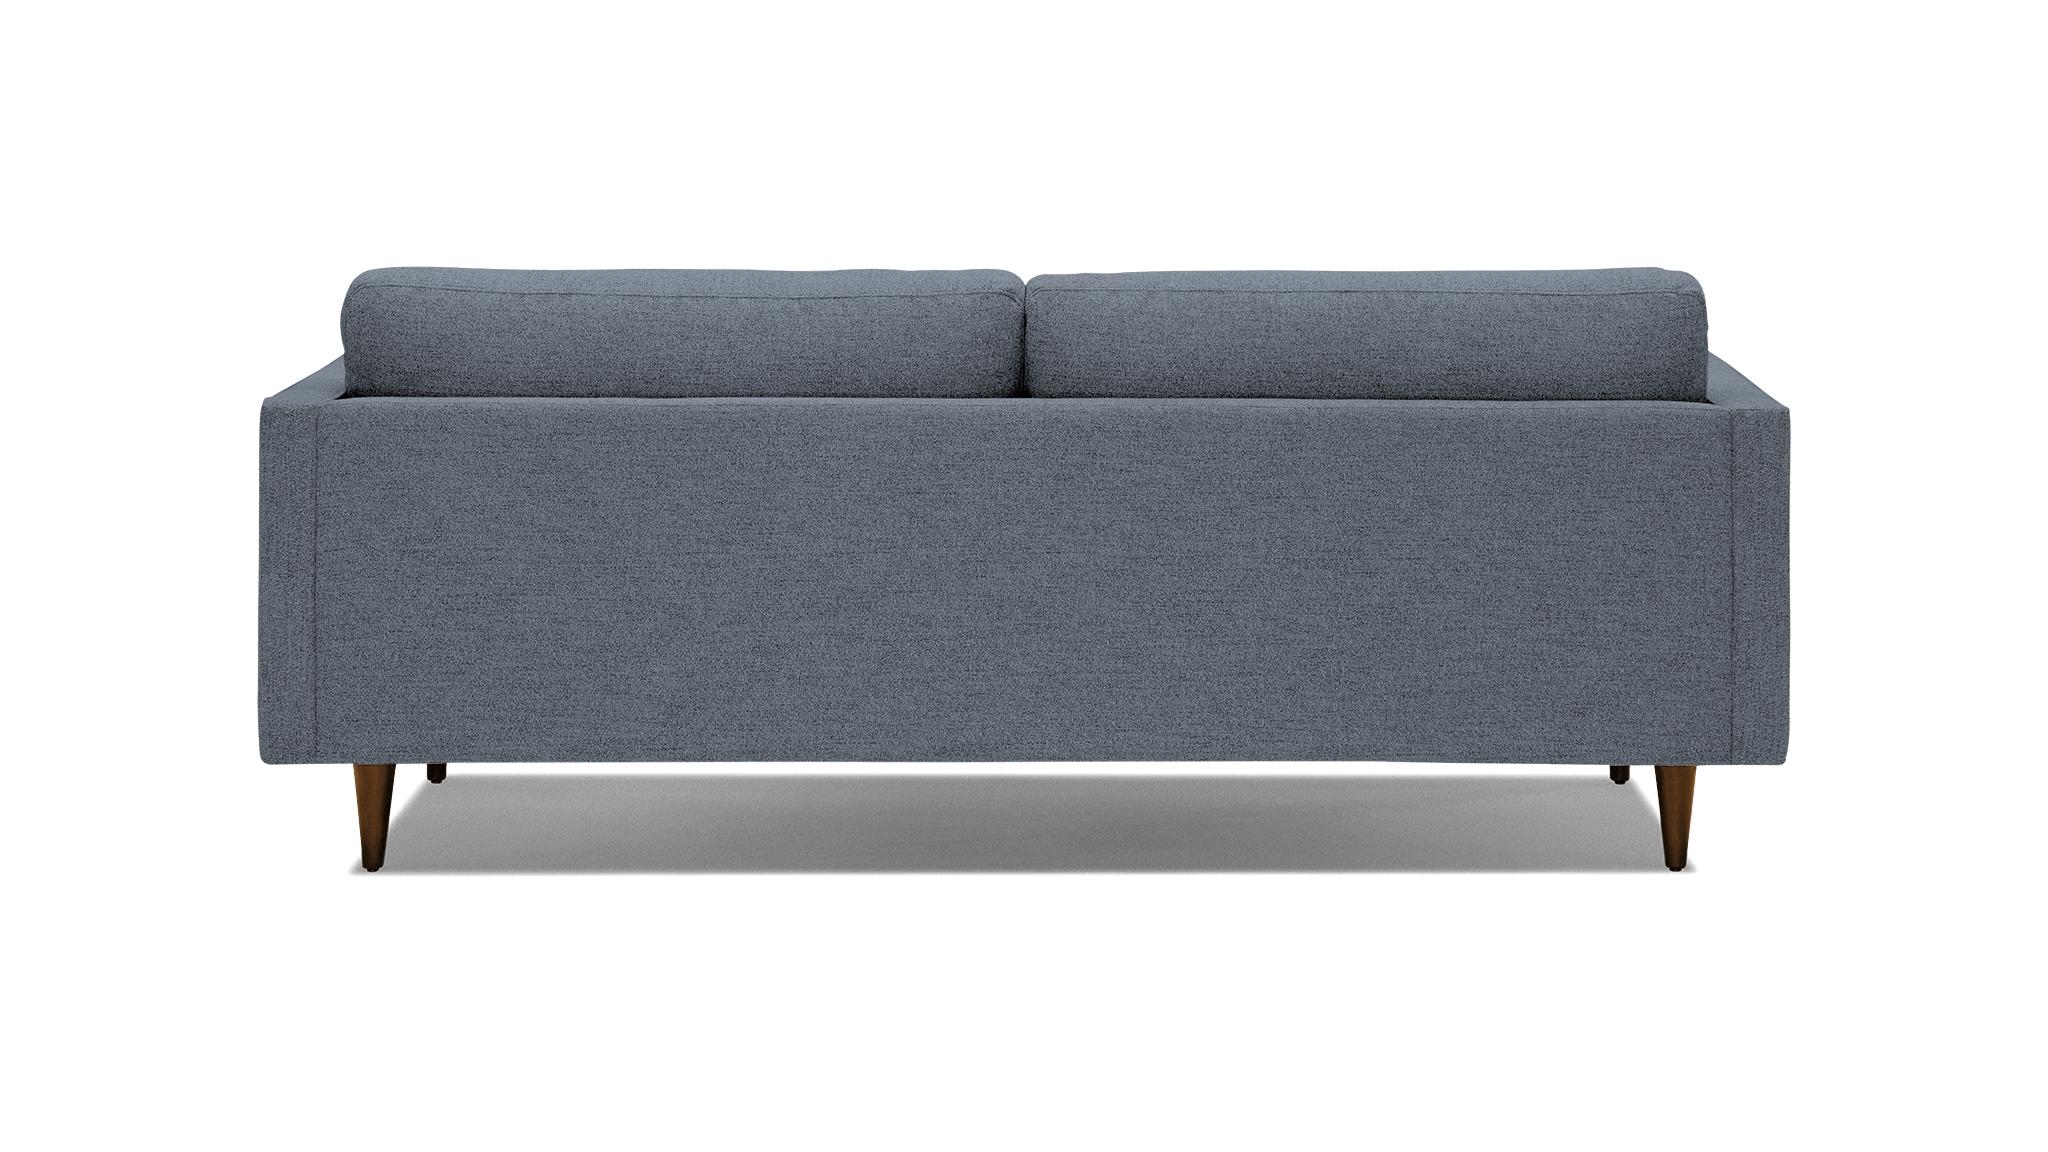 Blue Briar Mid Century Modern Sofa - Dawson Slate - Mocha - Image 4